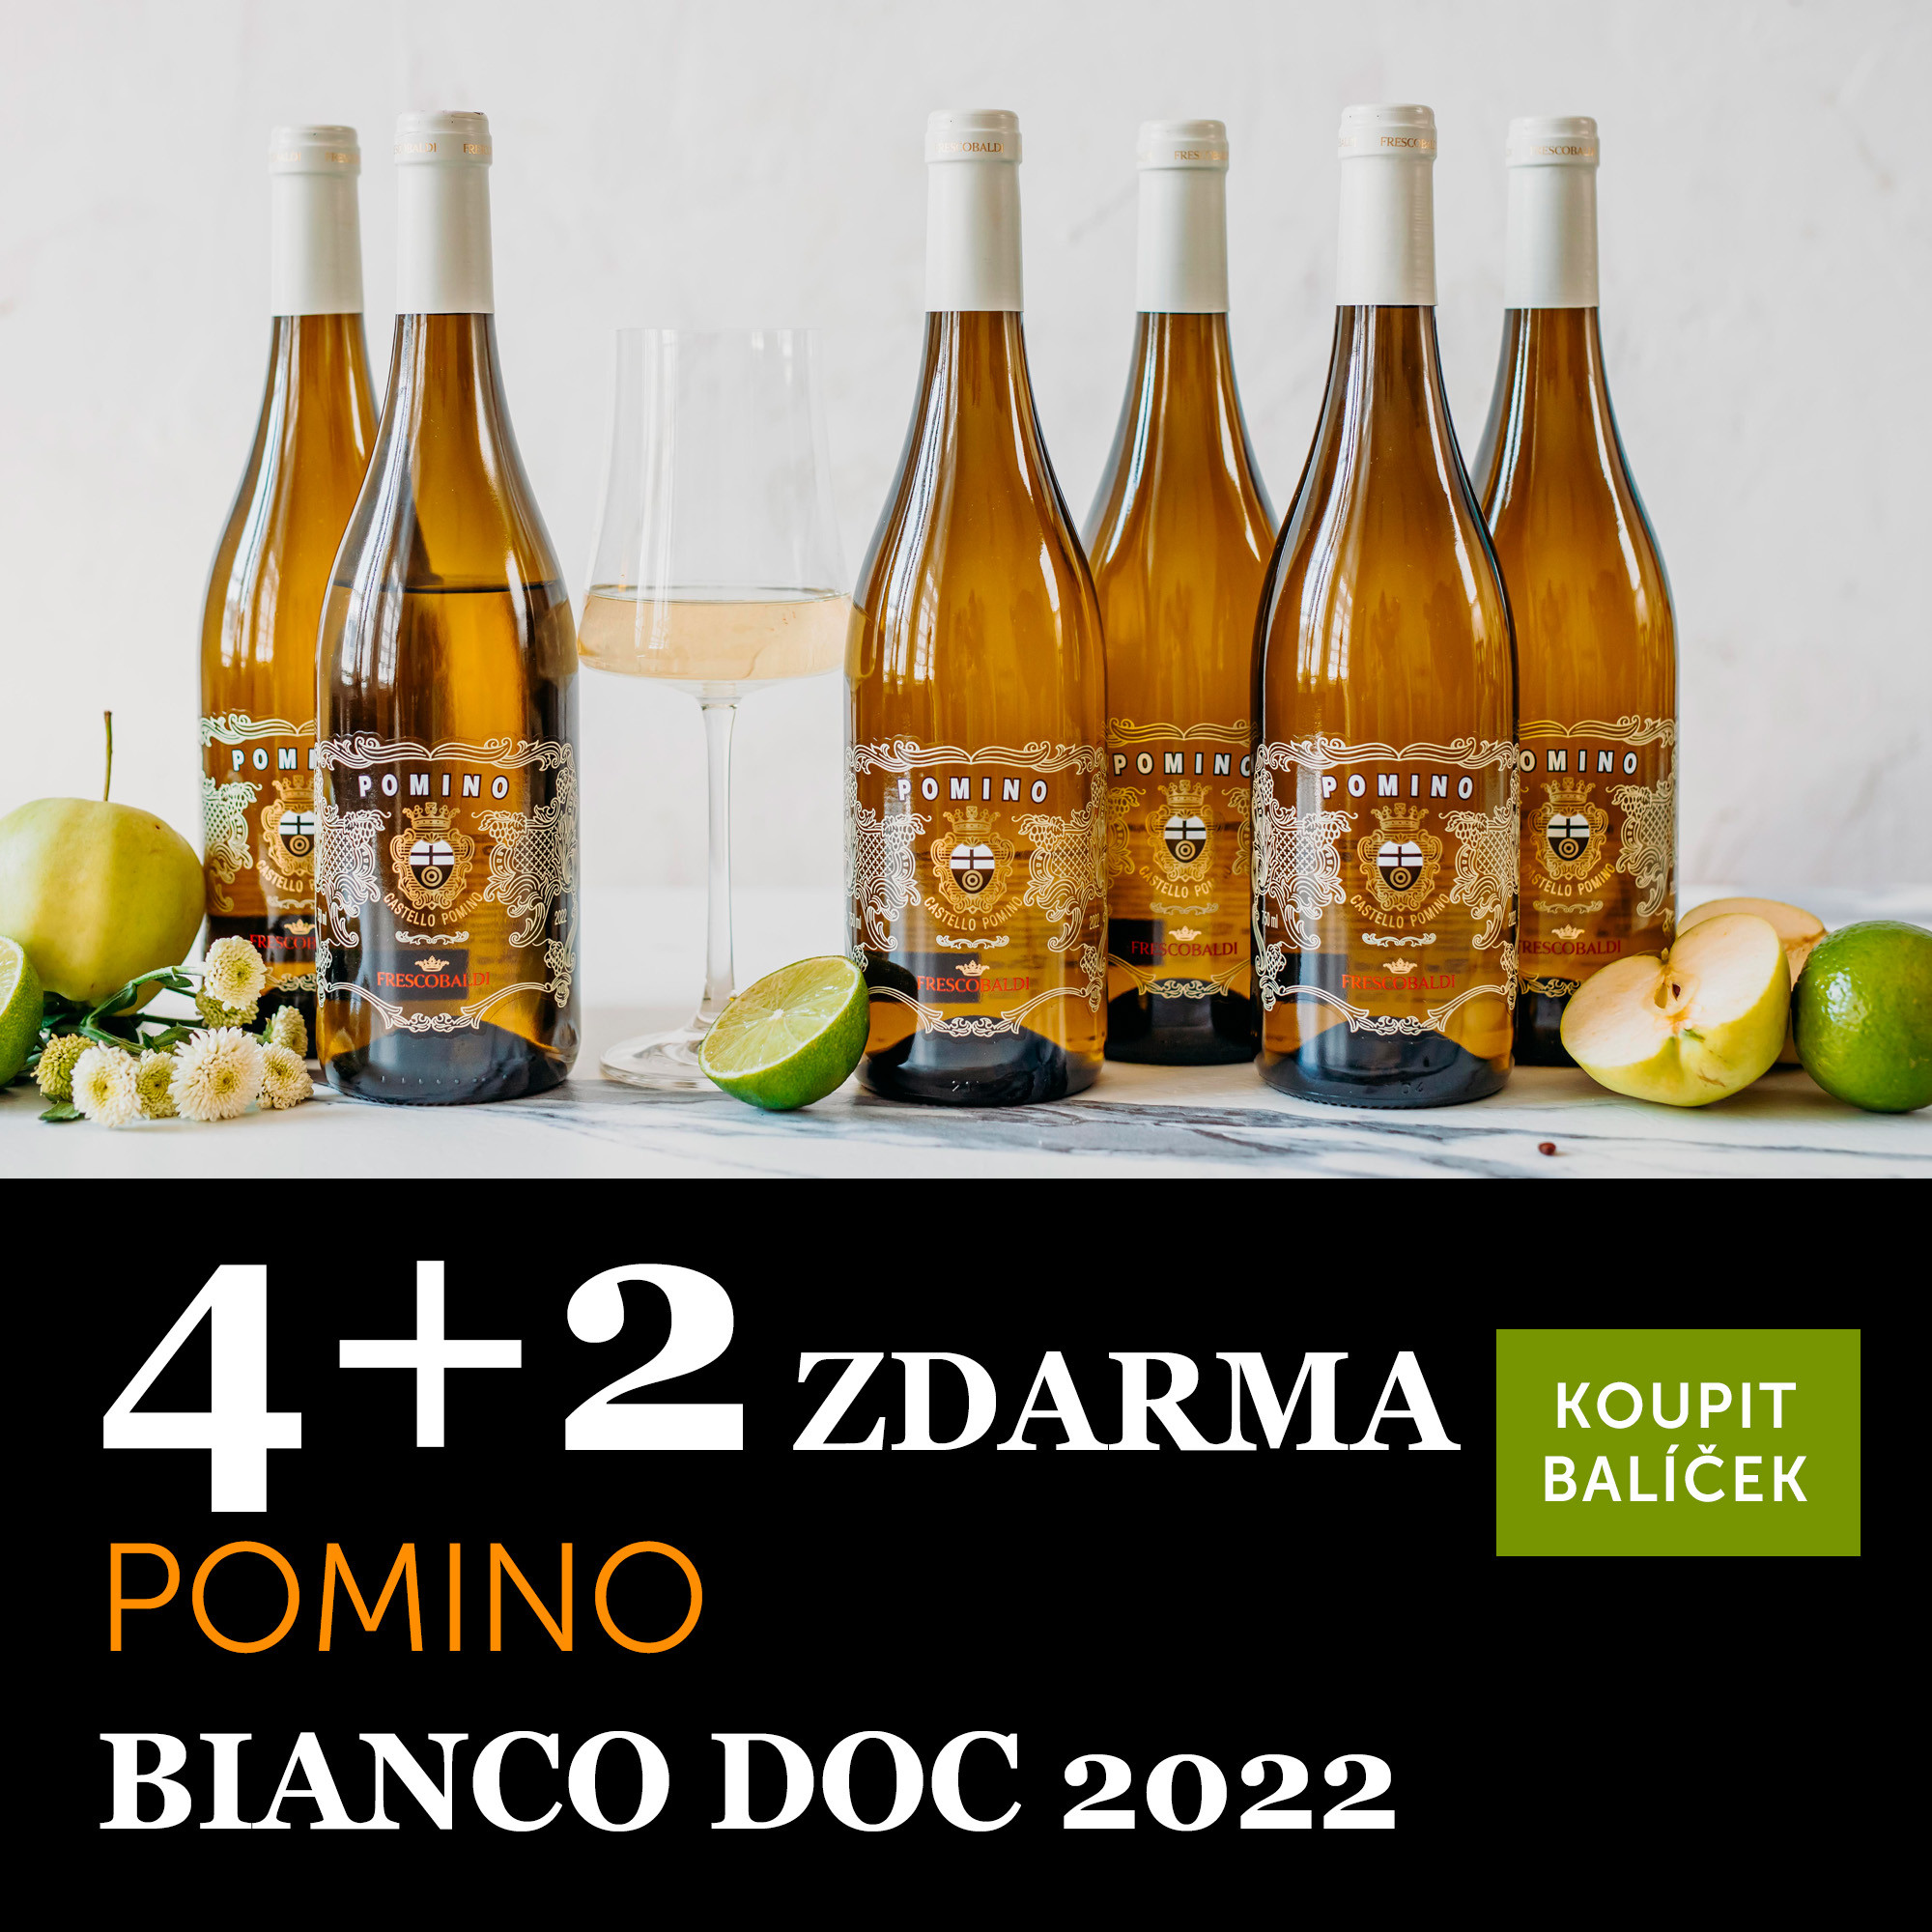 Pomino Bianco DOC 2022 - 4+2 zdarma - UKONČENO